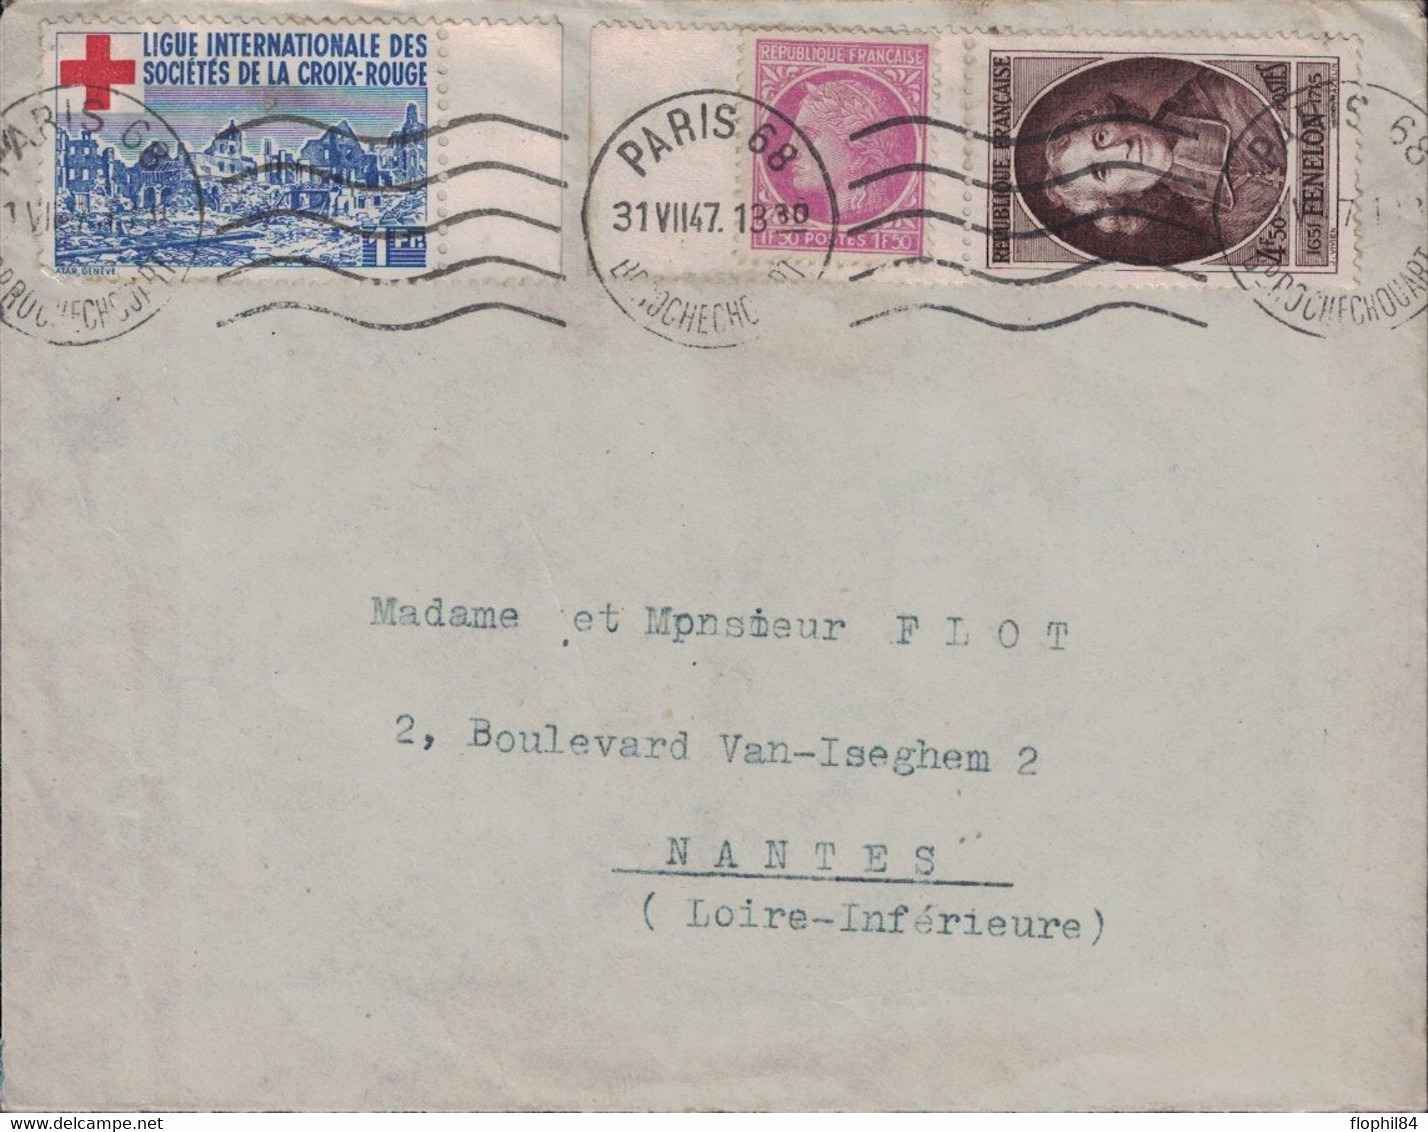 PARIS 68 - BD ROCHECHOUARD - TIMBRE DE DE LA LIGUE DES STES DE LA CROIX ROUGE - BEL AFFRANCHISSEMENT - 31-7-1947. - Croce Rossa